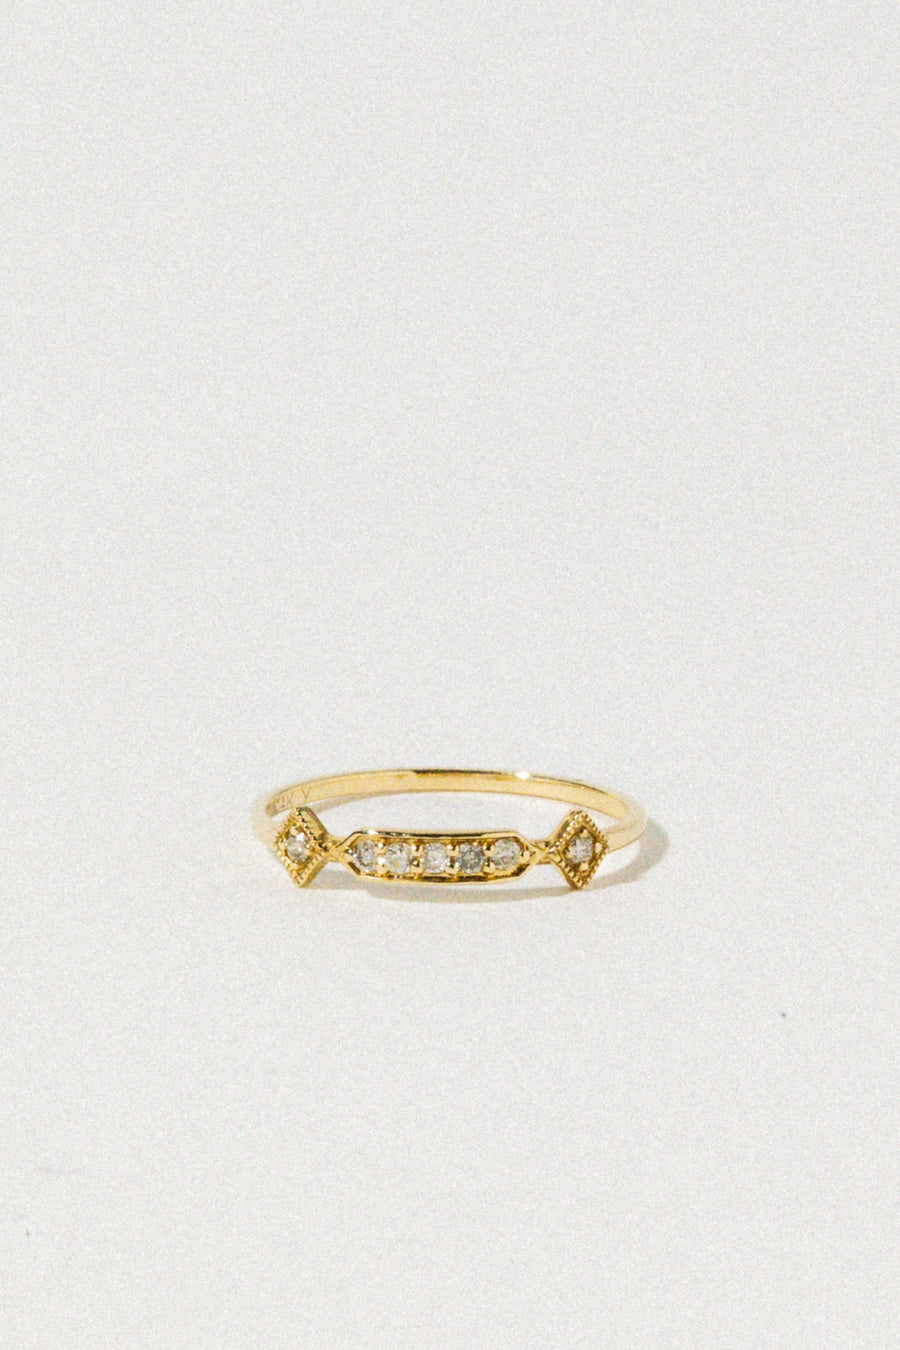 Tresor Jewelry Gold / US 6 14kt Diamond Daze Ring